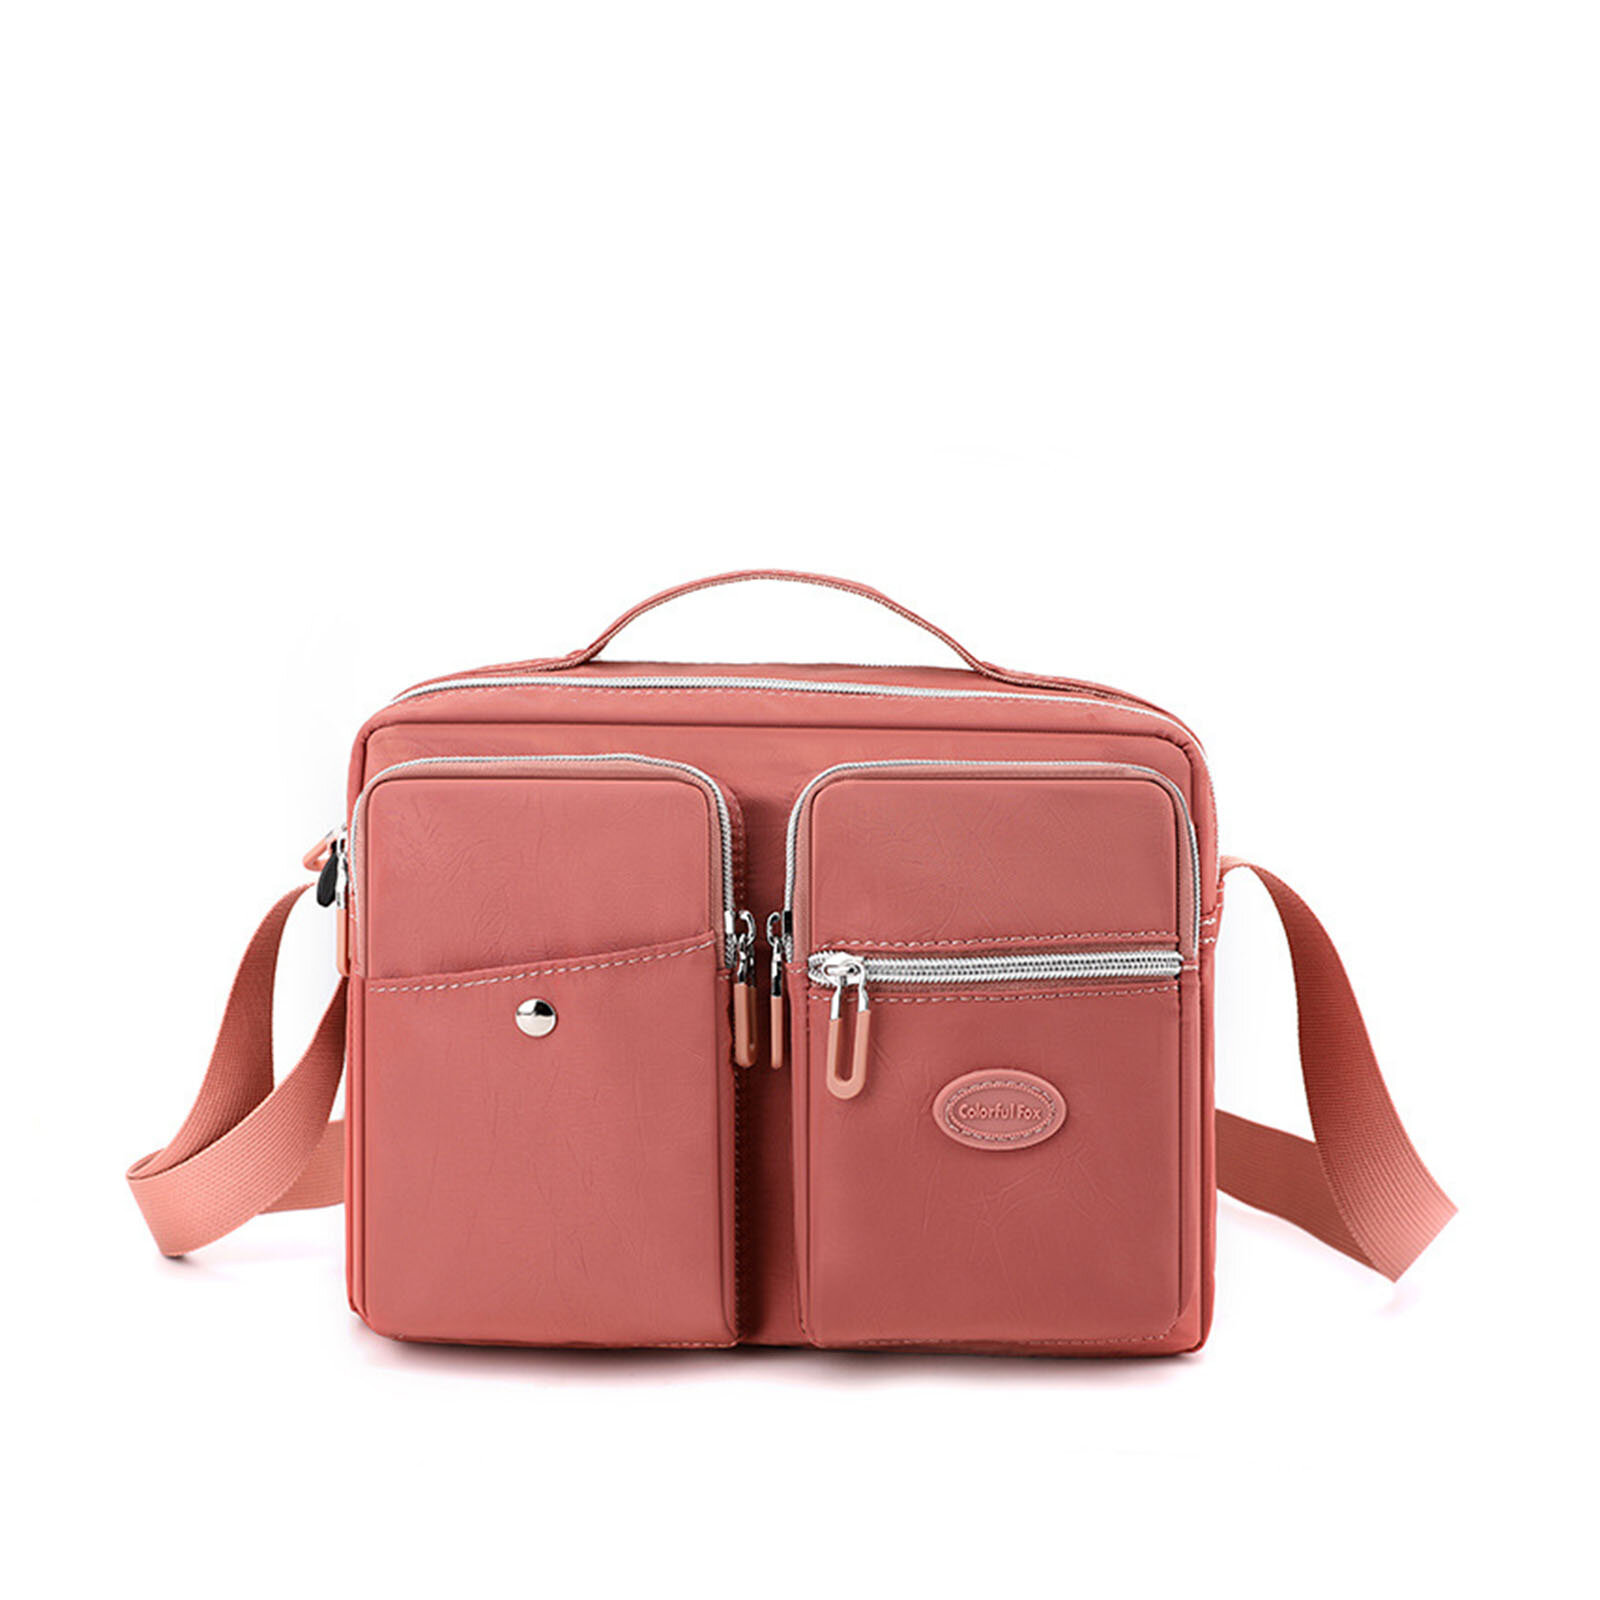 JOSEKO Women Nylon Large Capacity Waterproof Casual Handbag Shoulder Bag Messenger Bag